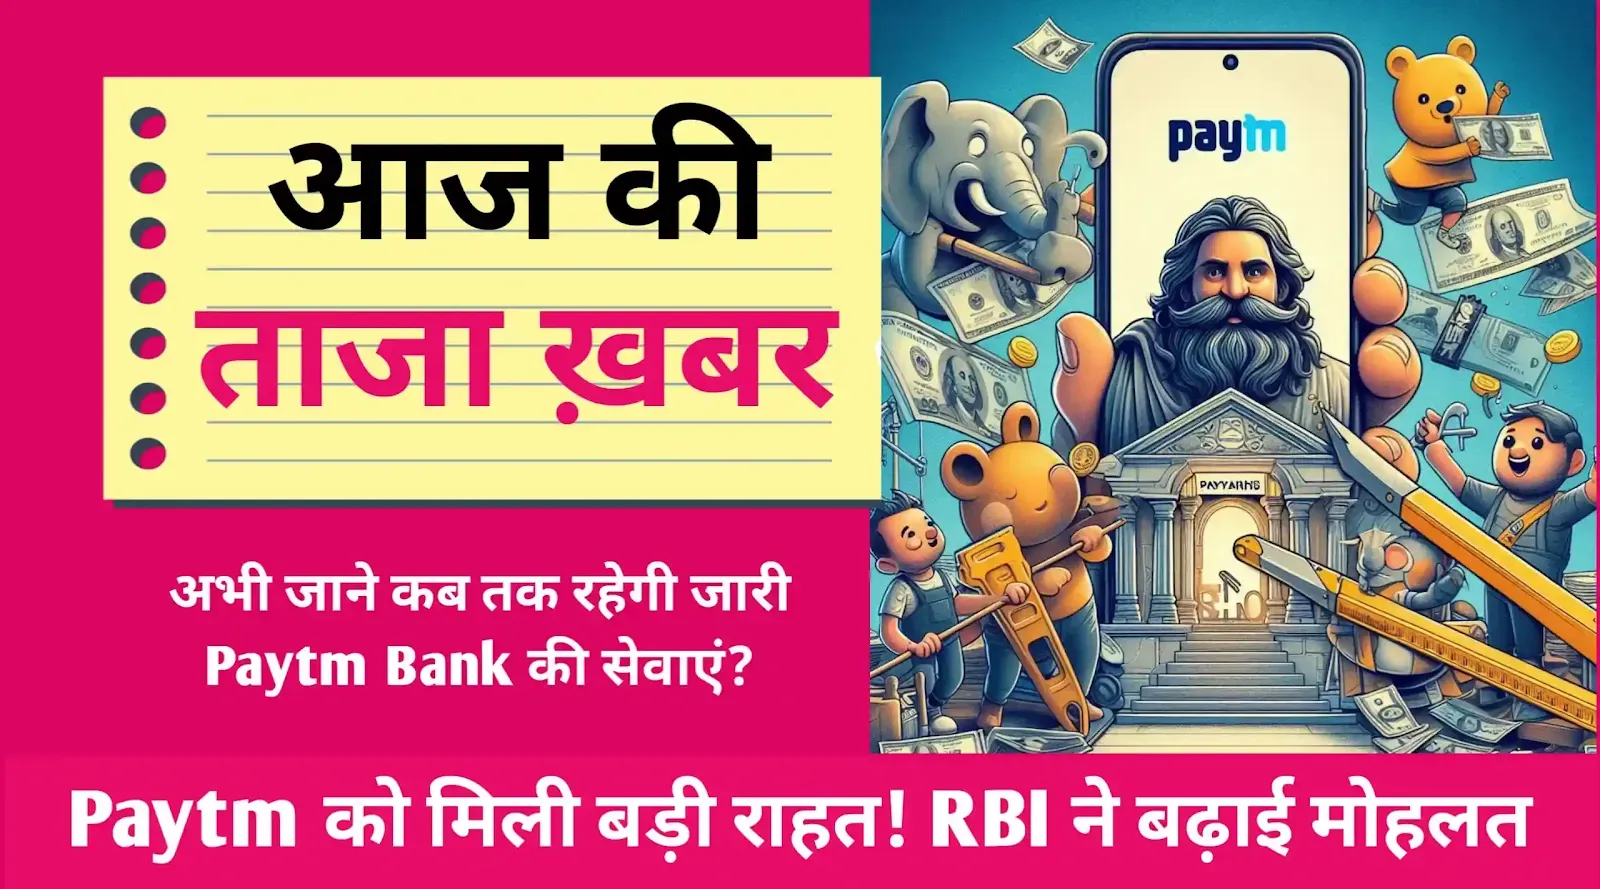 Paytm को मिली बड़ी राहत! RBI ने बढ़ाई मोहलत, अब 15 मार्च तक जारी रहेंगी पेमेंट्स बैंक की सेवाएं